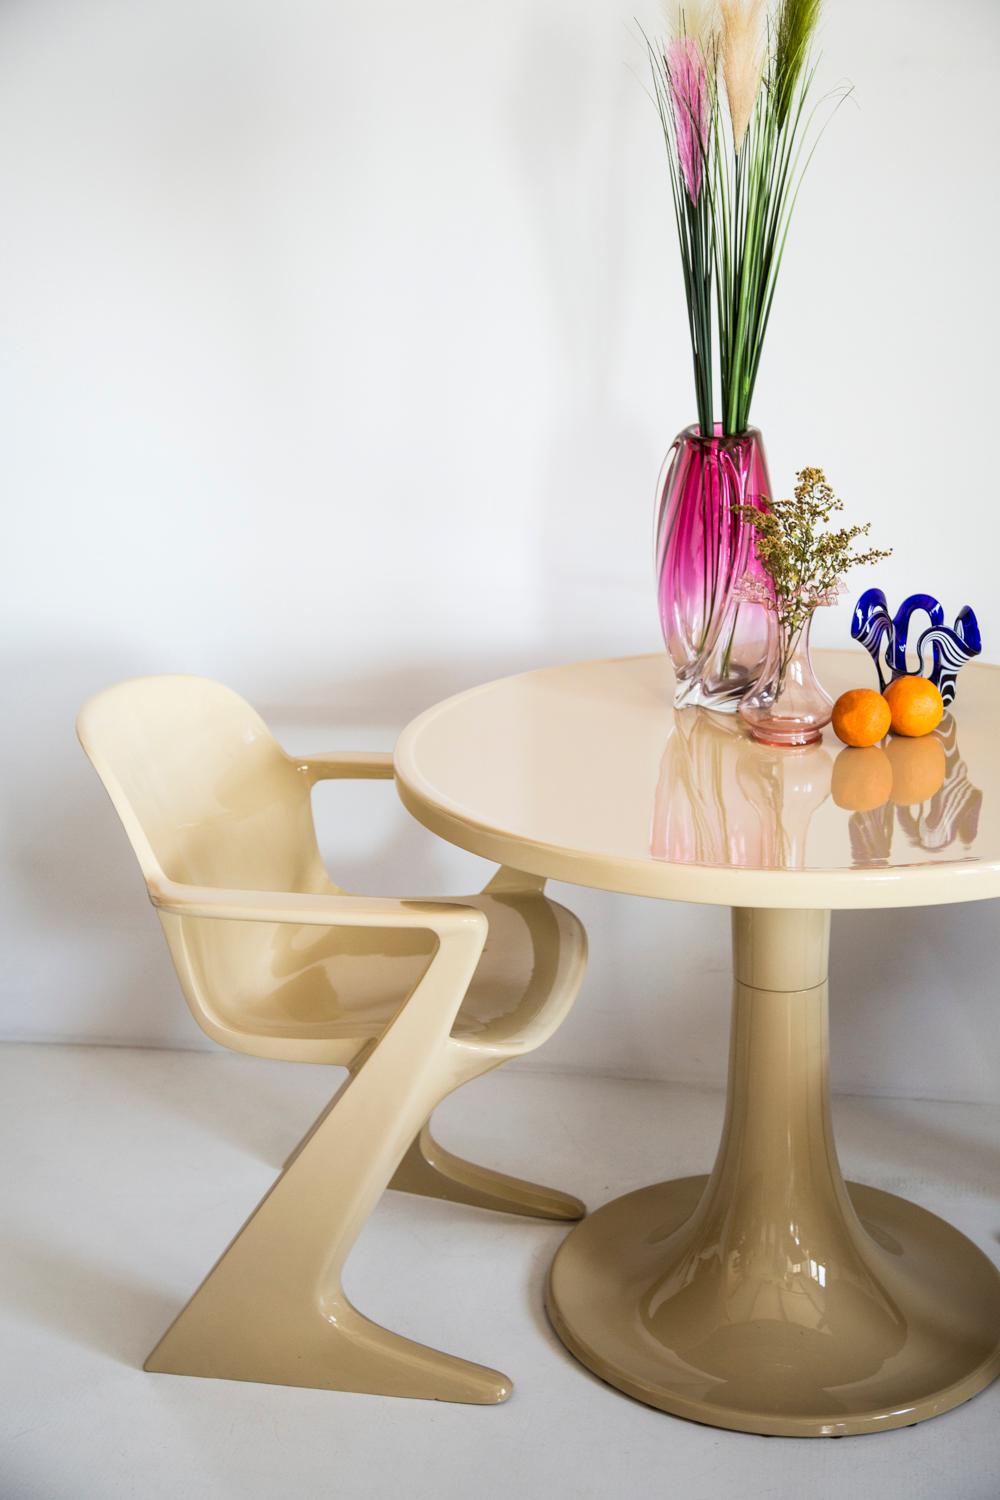 Der von Ernst Moeckl (1931-2013) in den 1970er Jahren entworfene z.stuhl Tisch ist ein freitragender Tisch aus Polyurethan. Im Volksmund ist der Tisch unter seinen geometriebezogenen Namen wie 